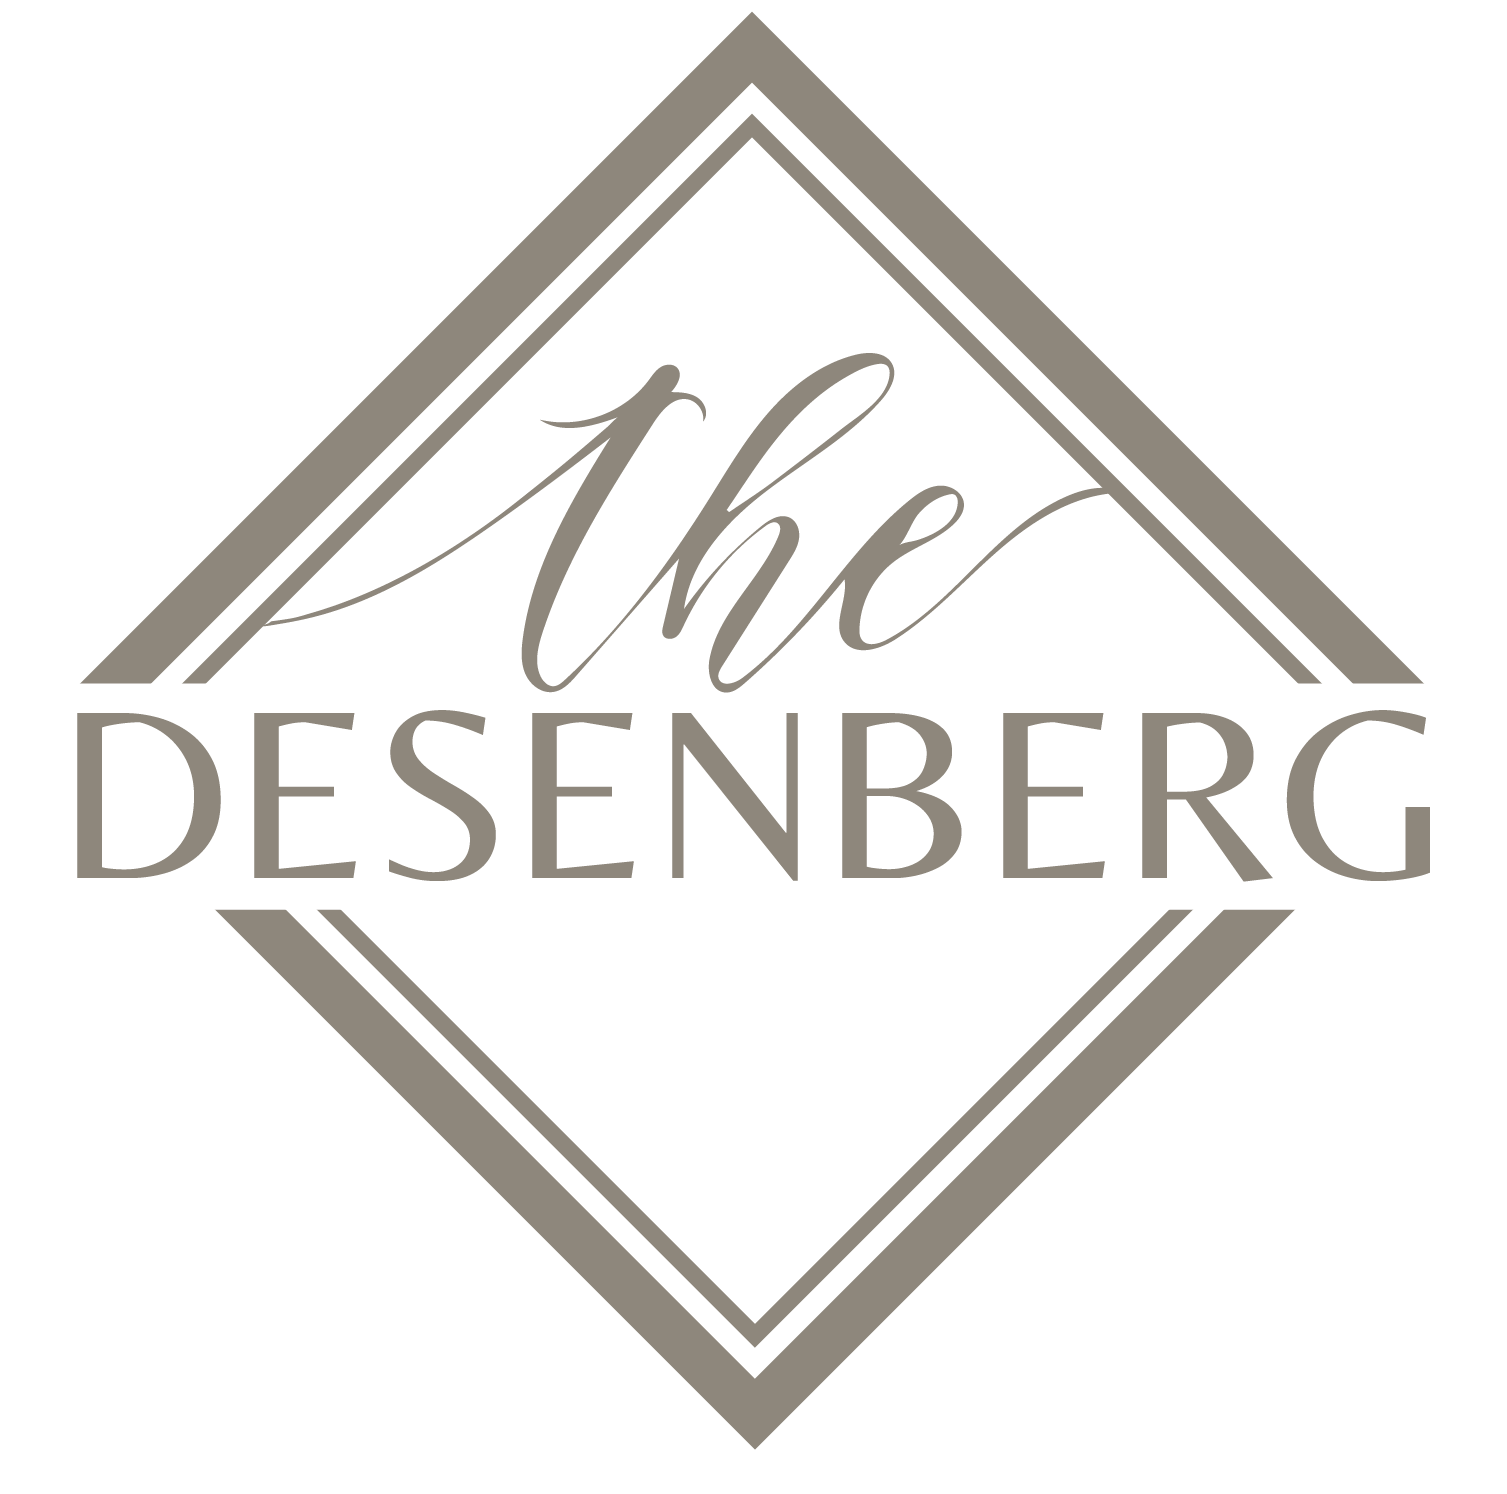 The Desenberg Logo